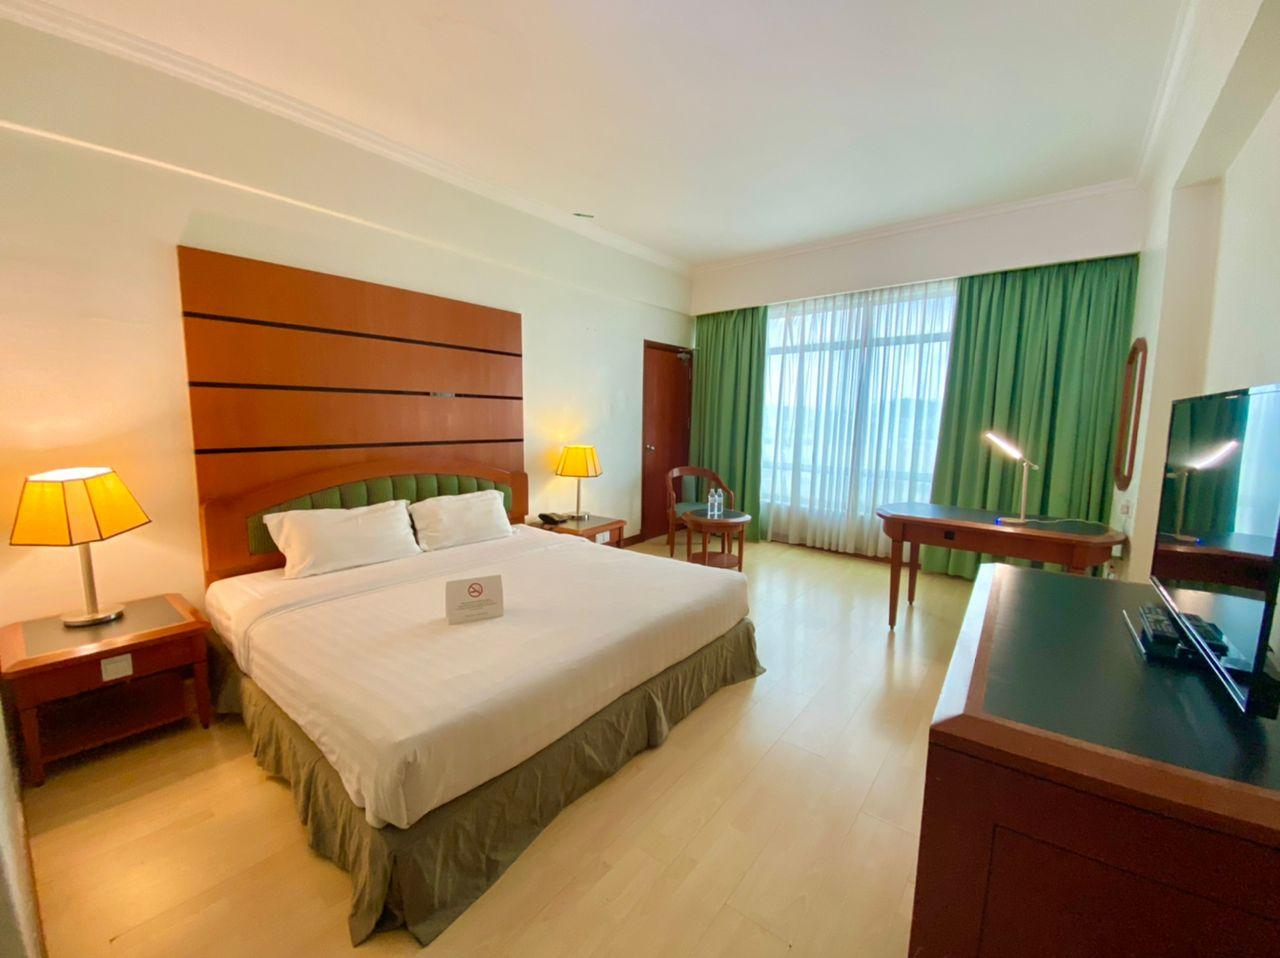 Bedroom 4, Oriental Crystal Hotel Kajang, Hulu Langat